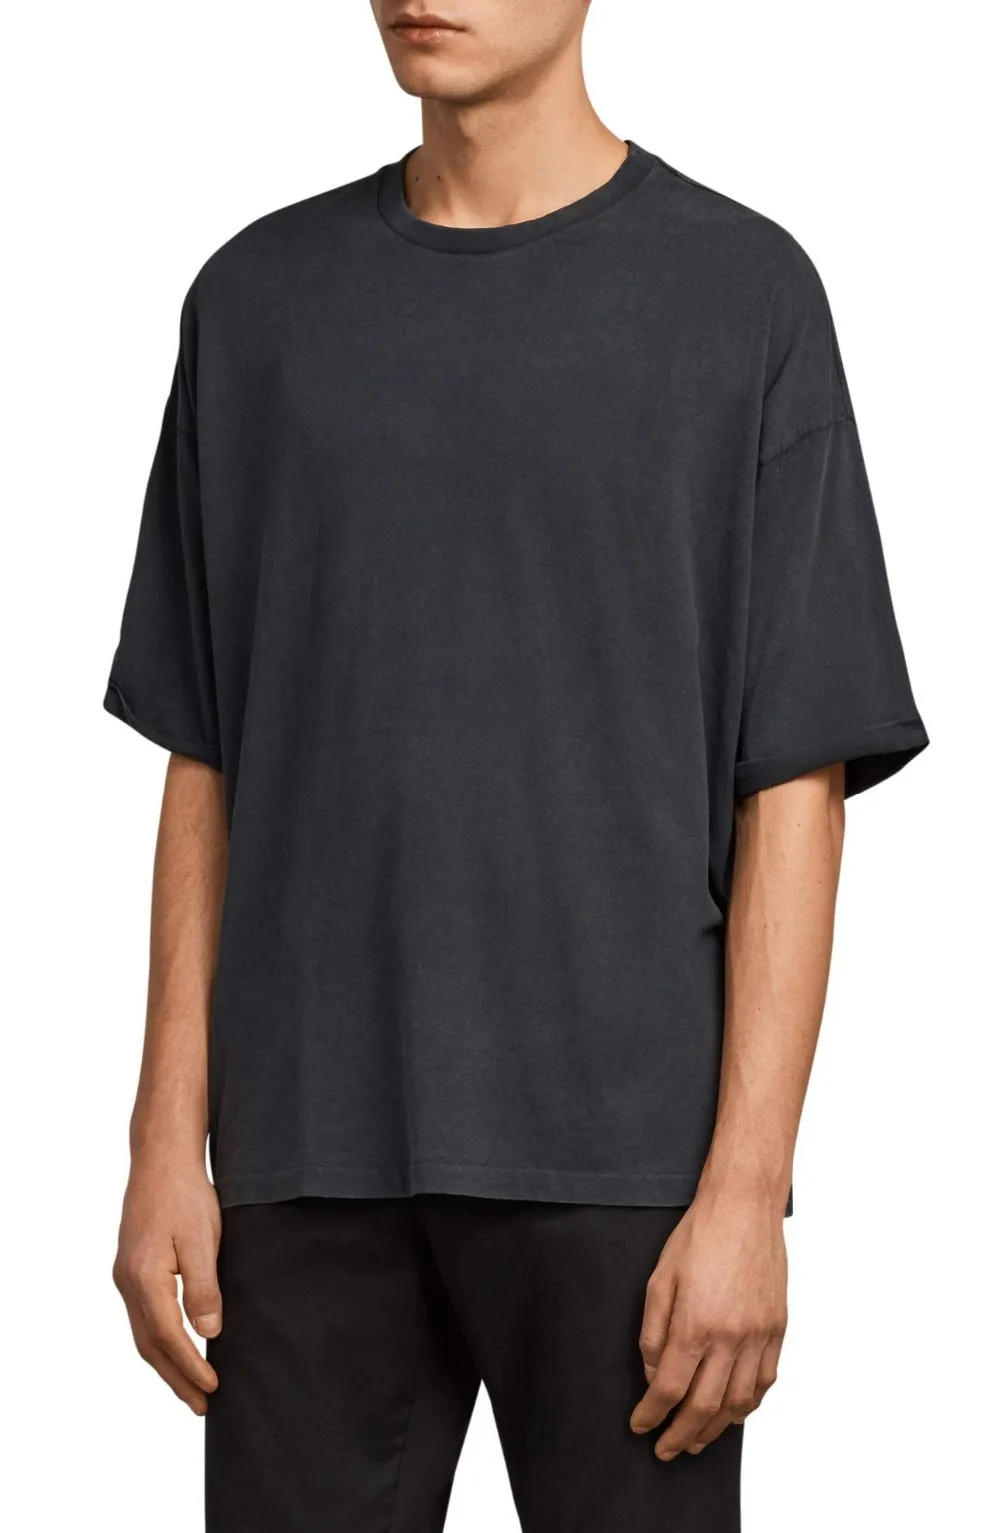 Crewneck Oversized Blank T Shirts - Buy Oversized Blank T Shirts ...